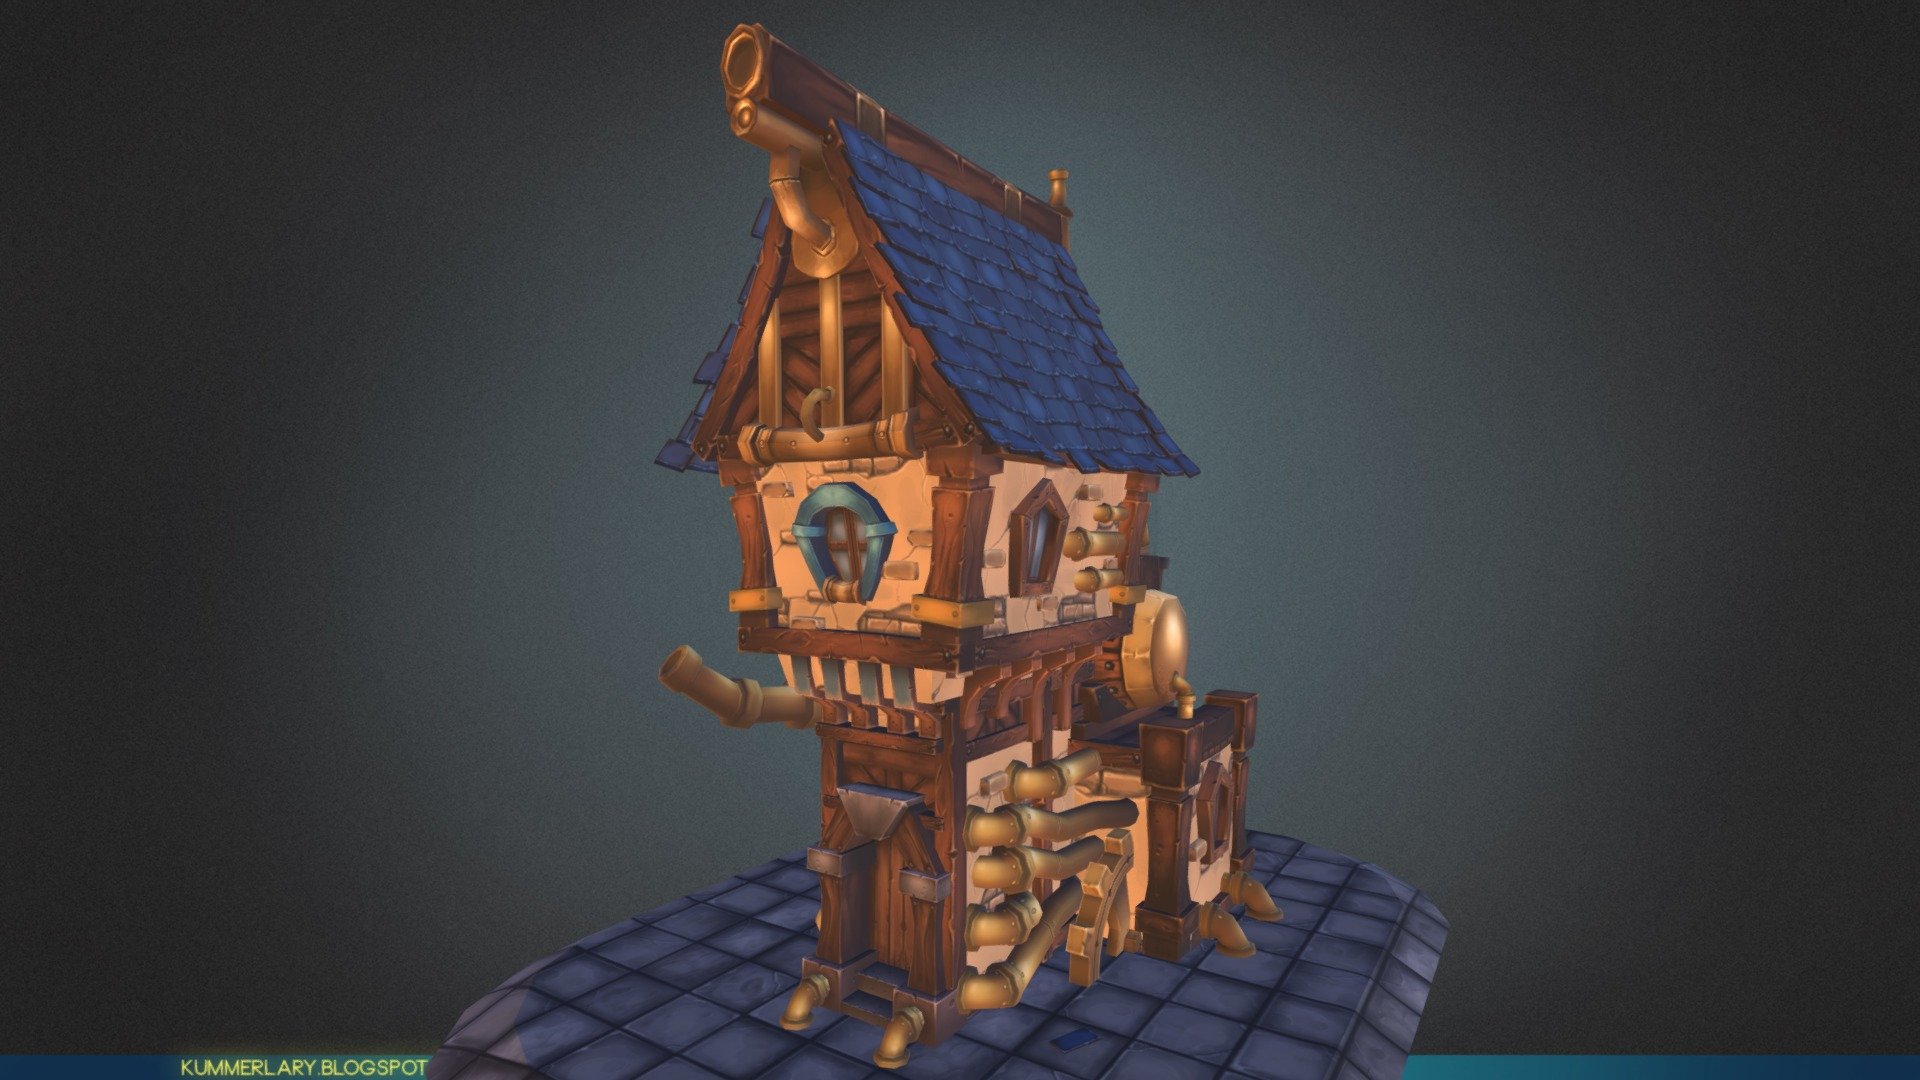 Maya 2015 &amp; Photoshop CS6.
~ 10 500 Tris
6x512
3x256

Inspired by http://offside926.deviantart.com/art/steam-XX-389115248 - Steam House - 3D model by LaryKummer 3d model